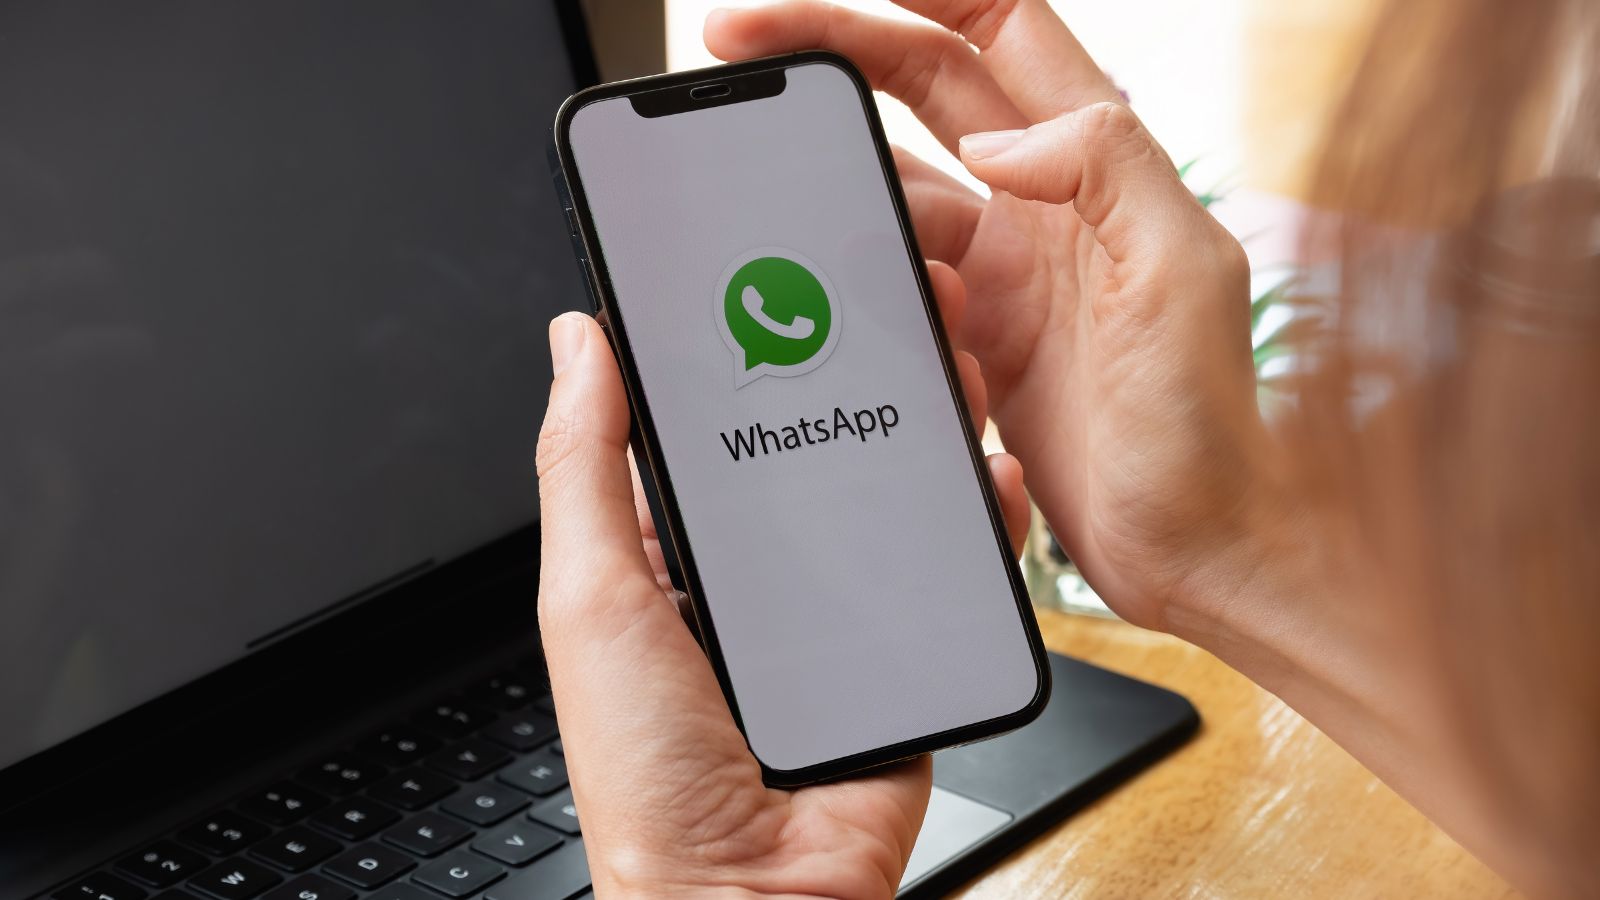 L’editor di adesivi su WhatsApp arriva nella versione beta Android 